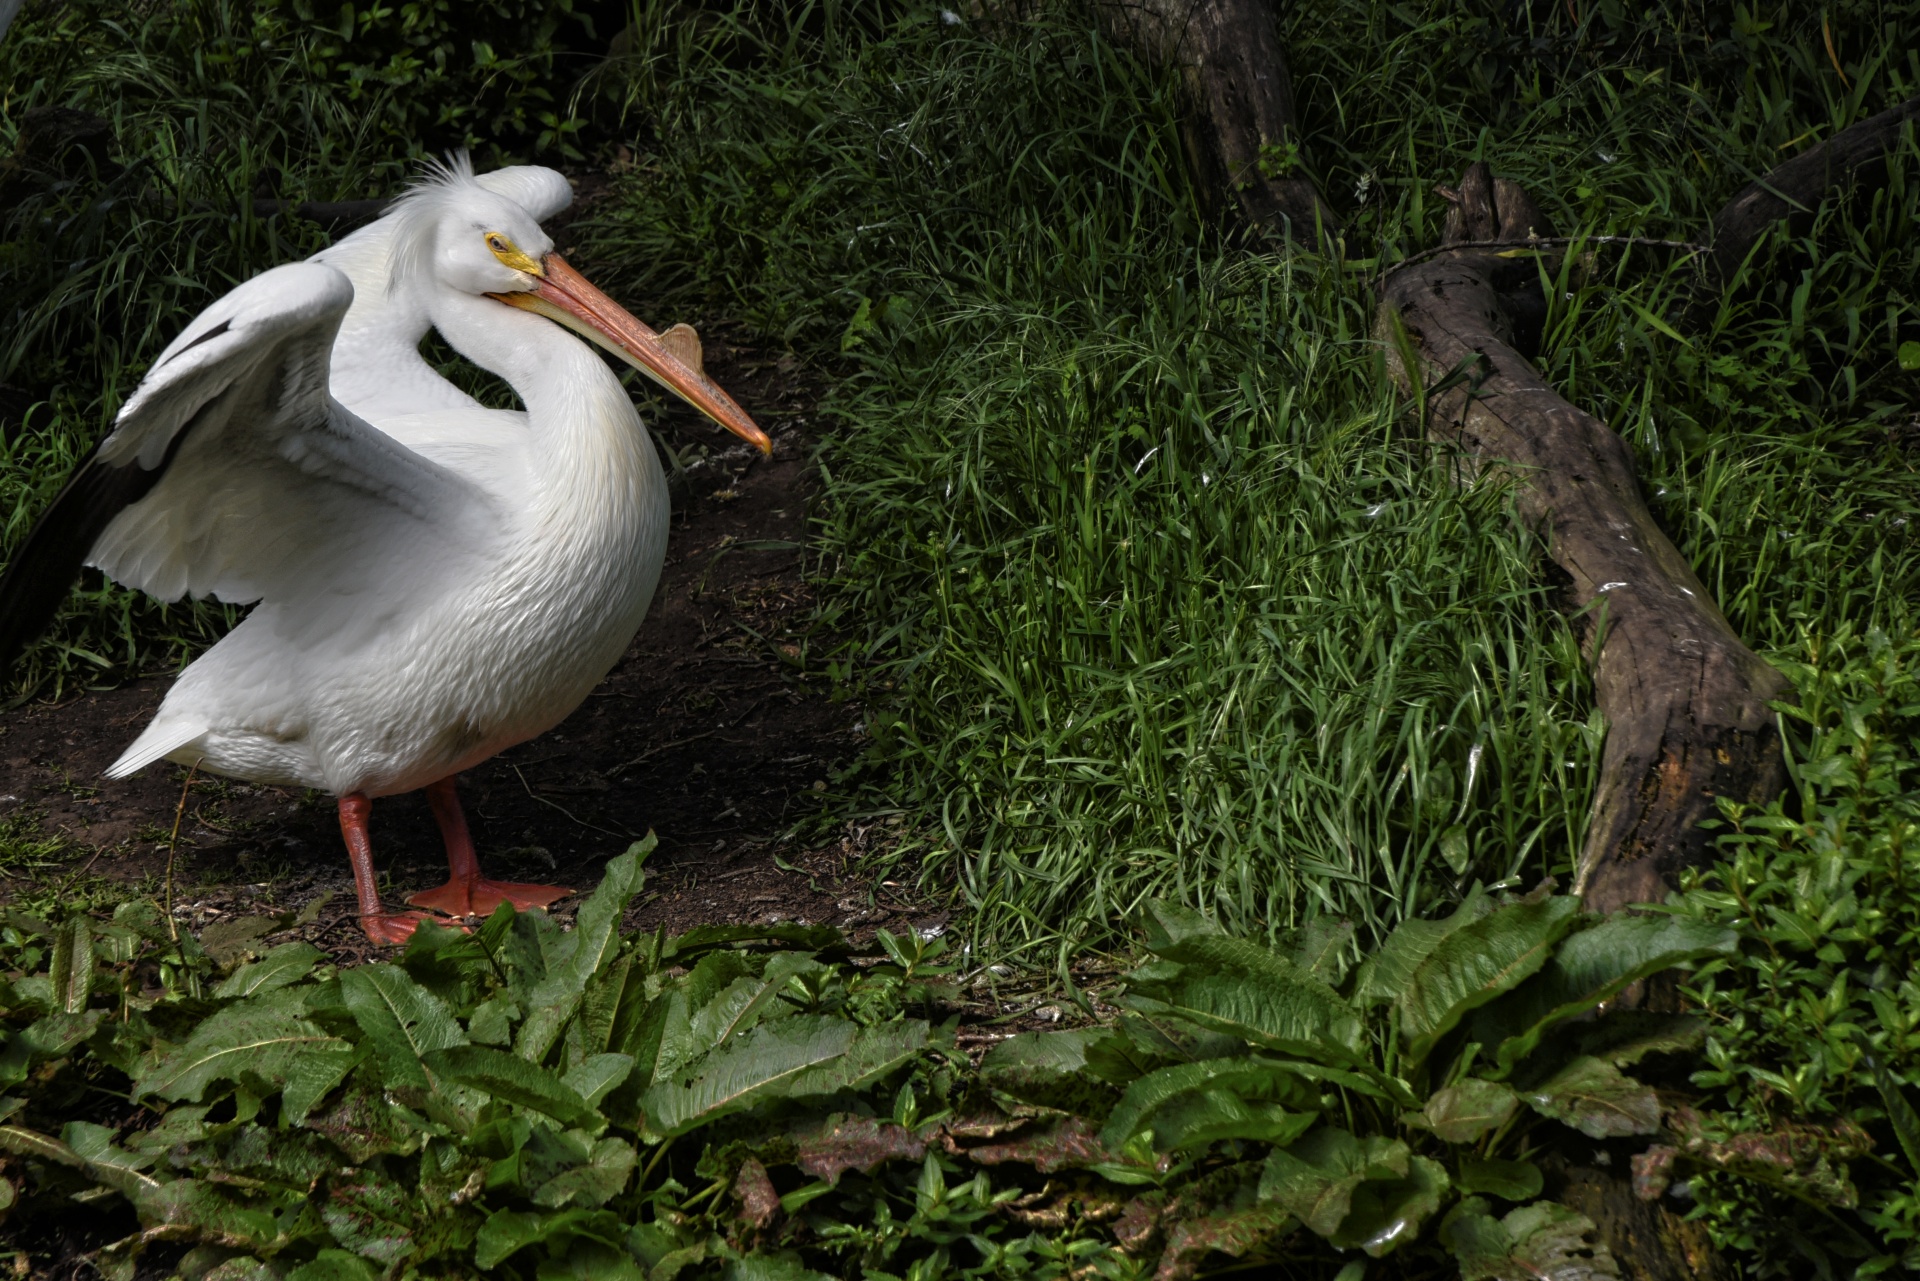 Witte pelikaan